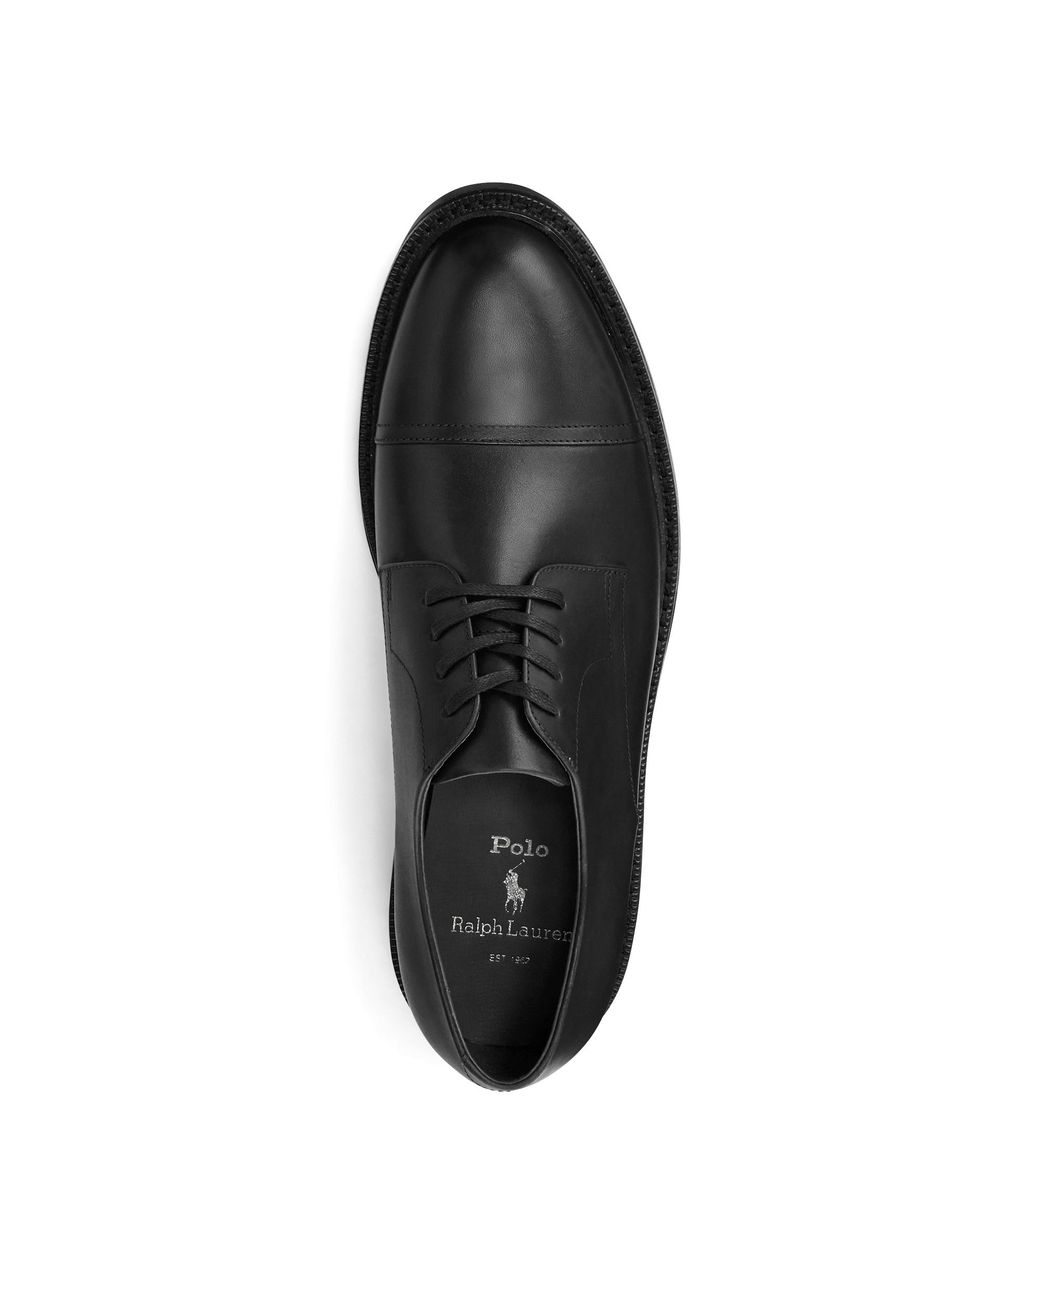 ralph lauren black leather shoes